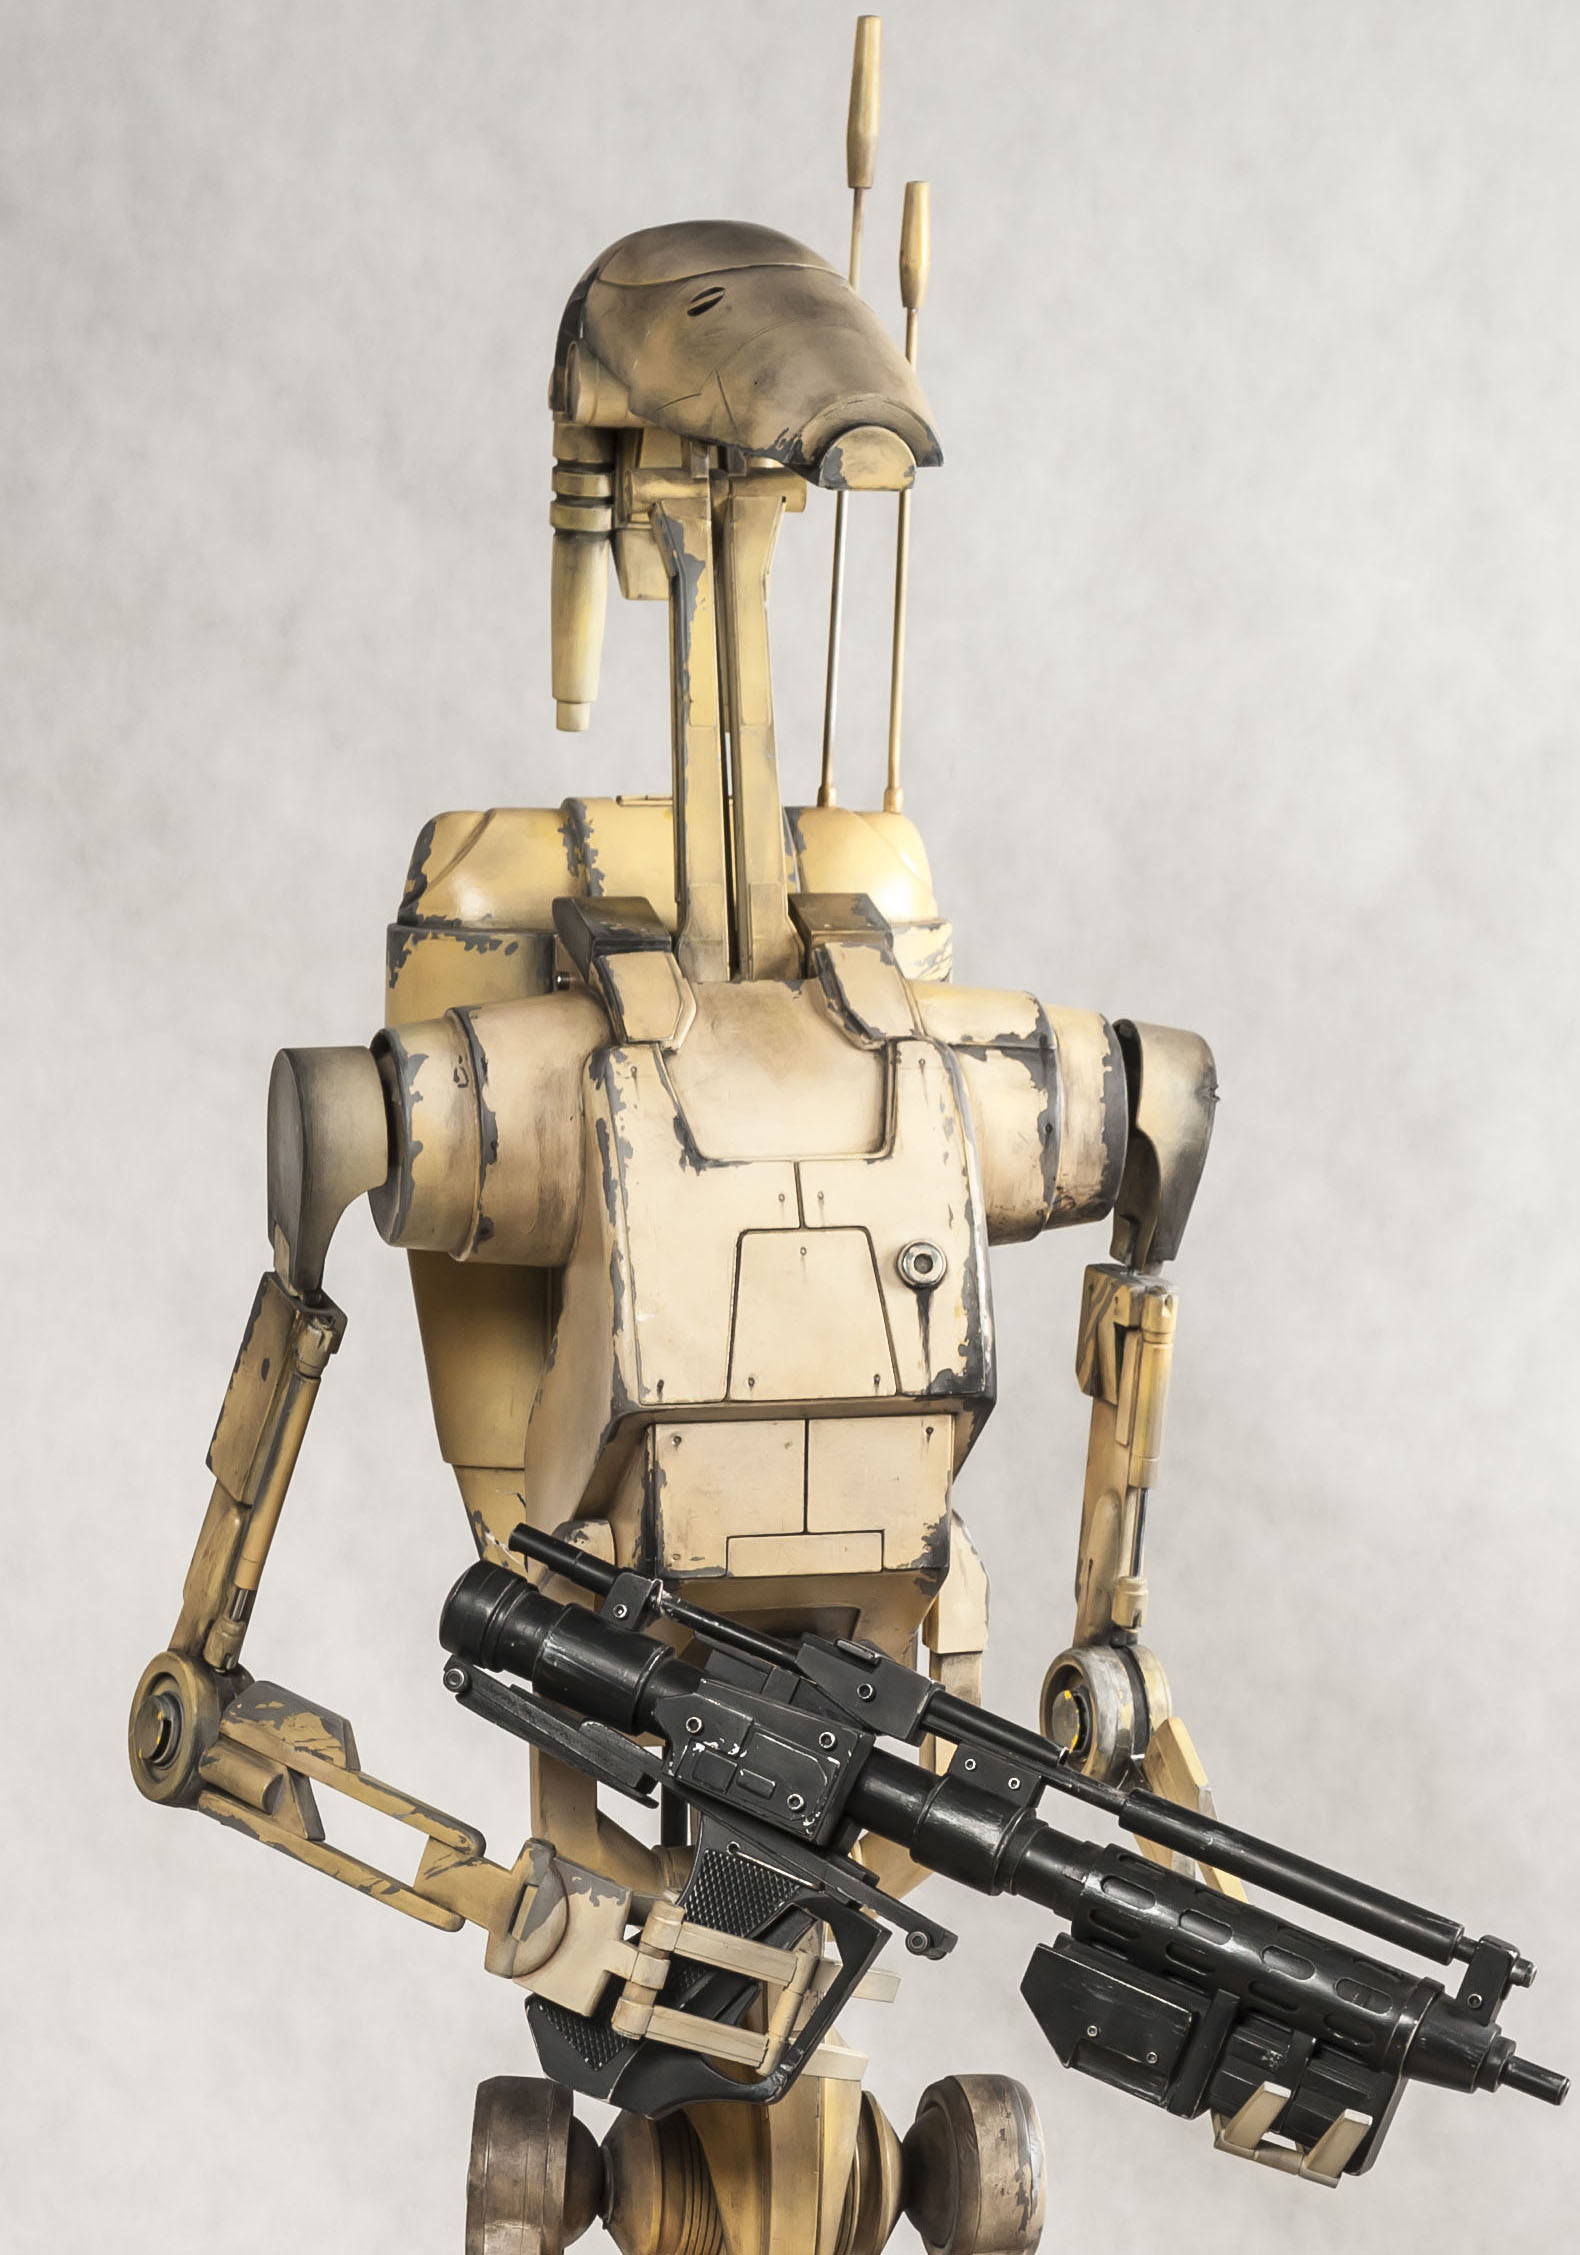 B1 battle droid - Wookieepedia, the Star Wars Wiki